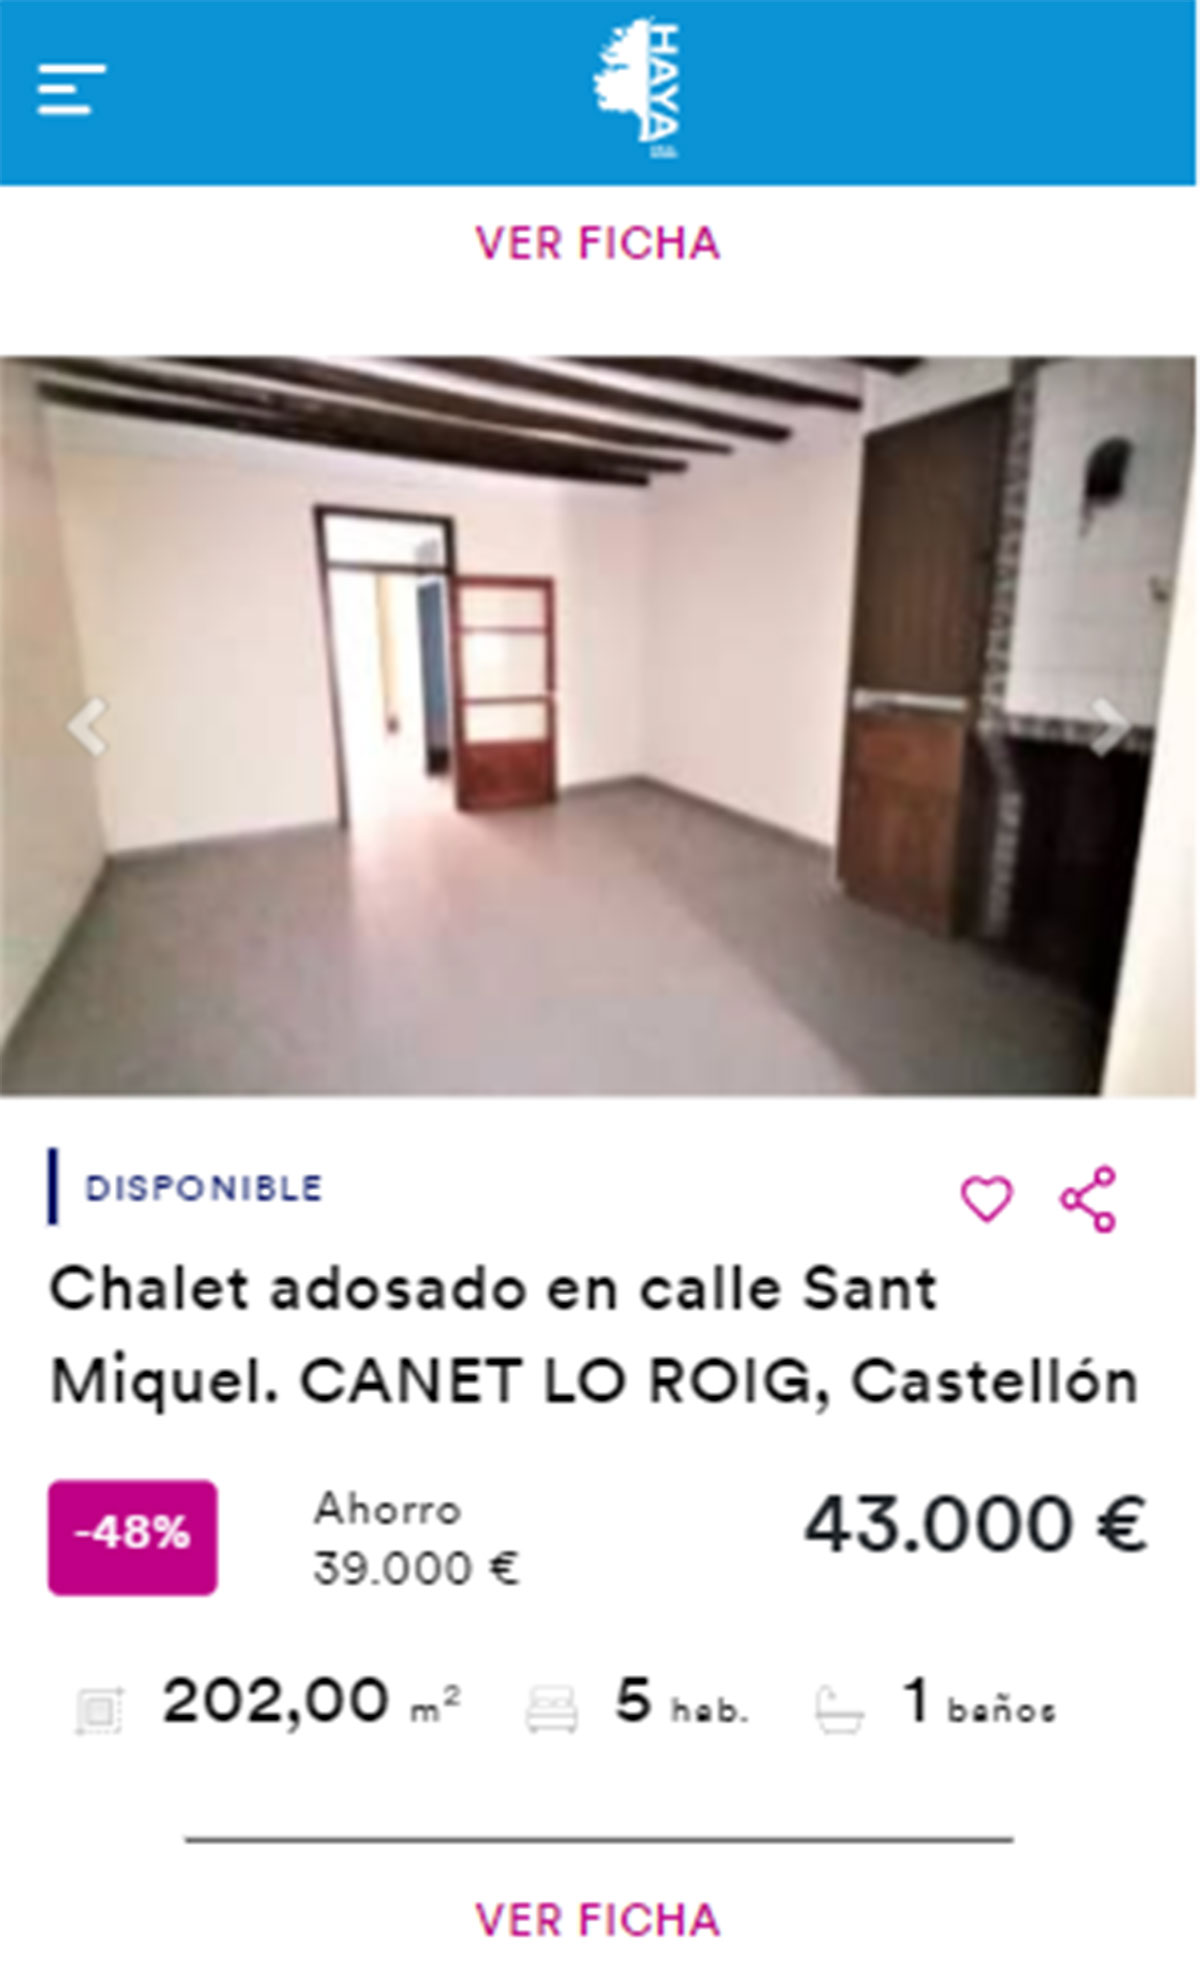 Chalet adosado en venta por 43.000 euros